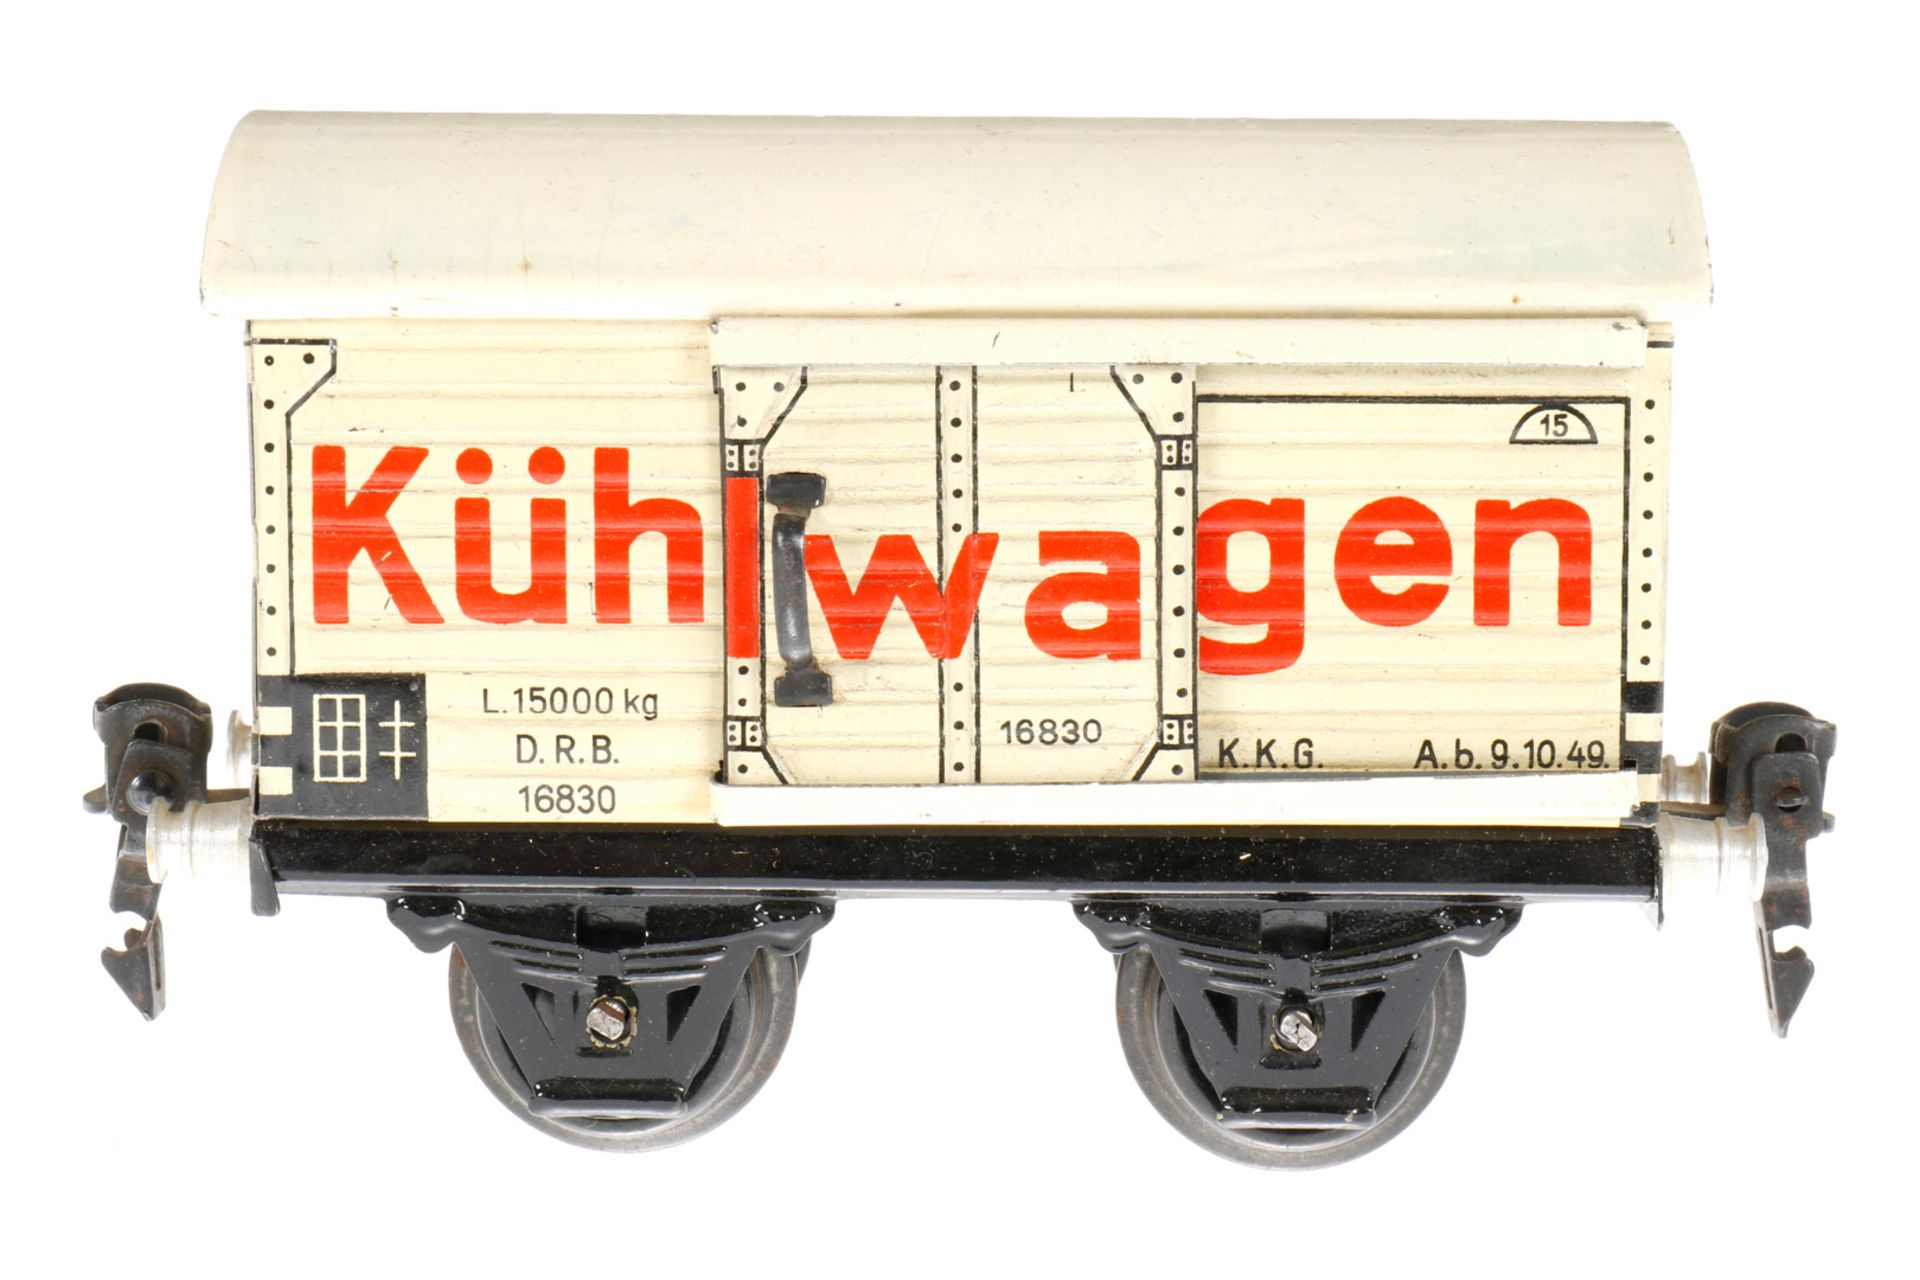 Märklin Kühlwagen 1683, S 0, CL, mit 1 ST, LS und gealterter Lack, L 13, im besch. OK 1681, sonst